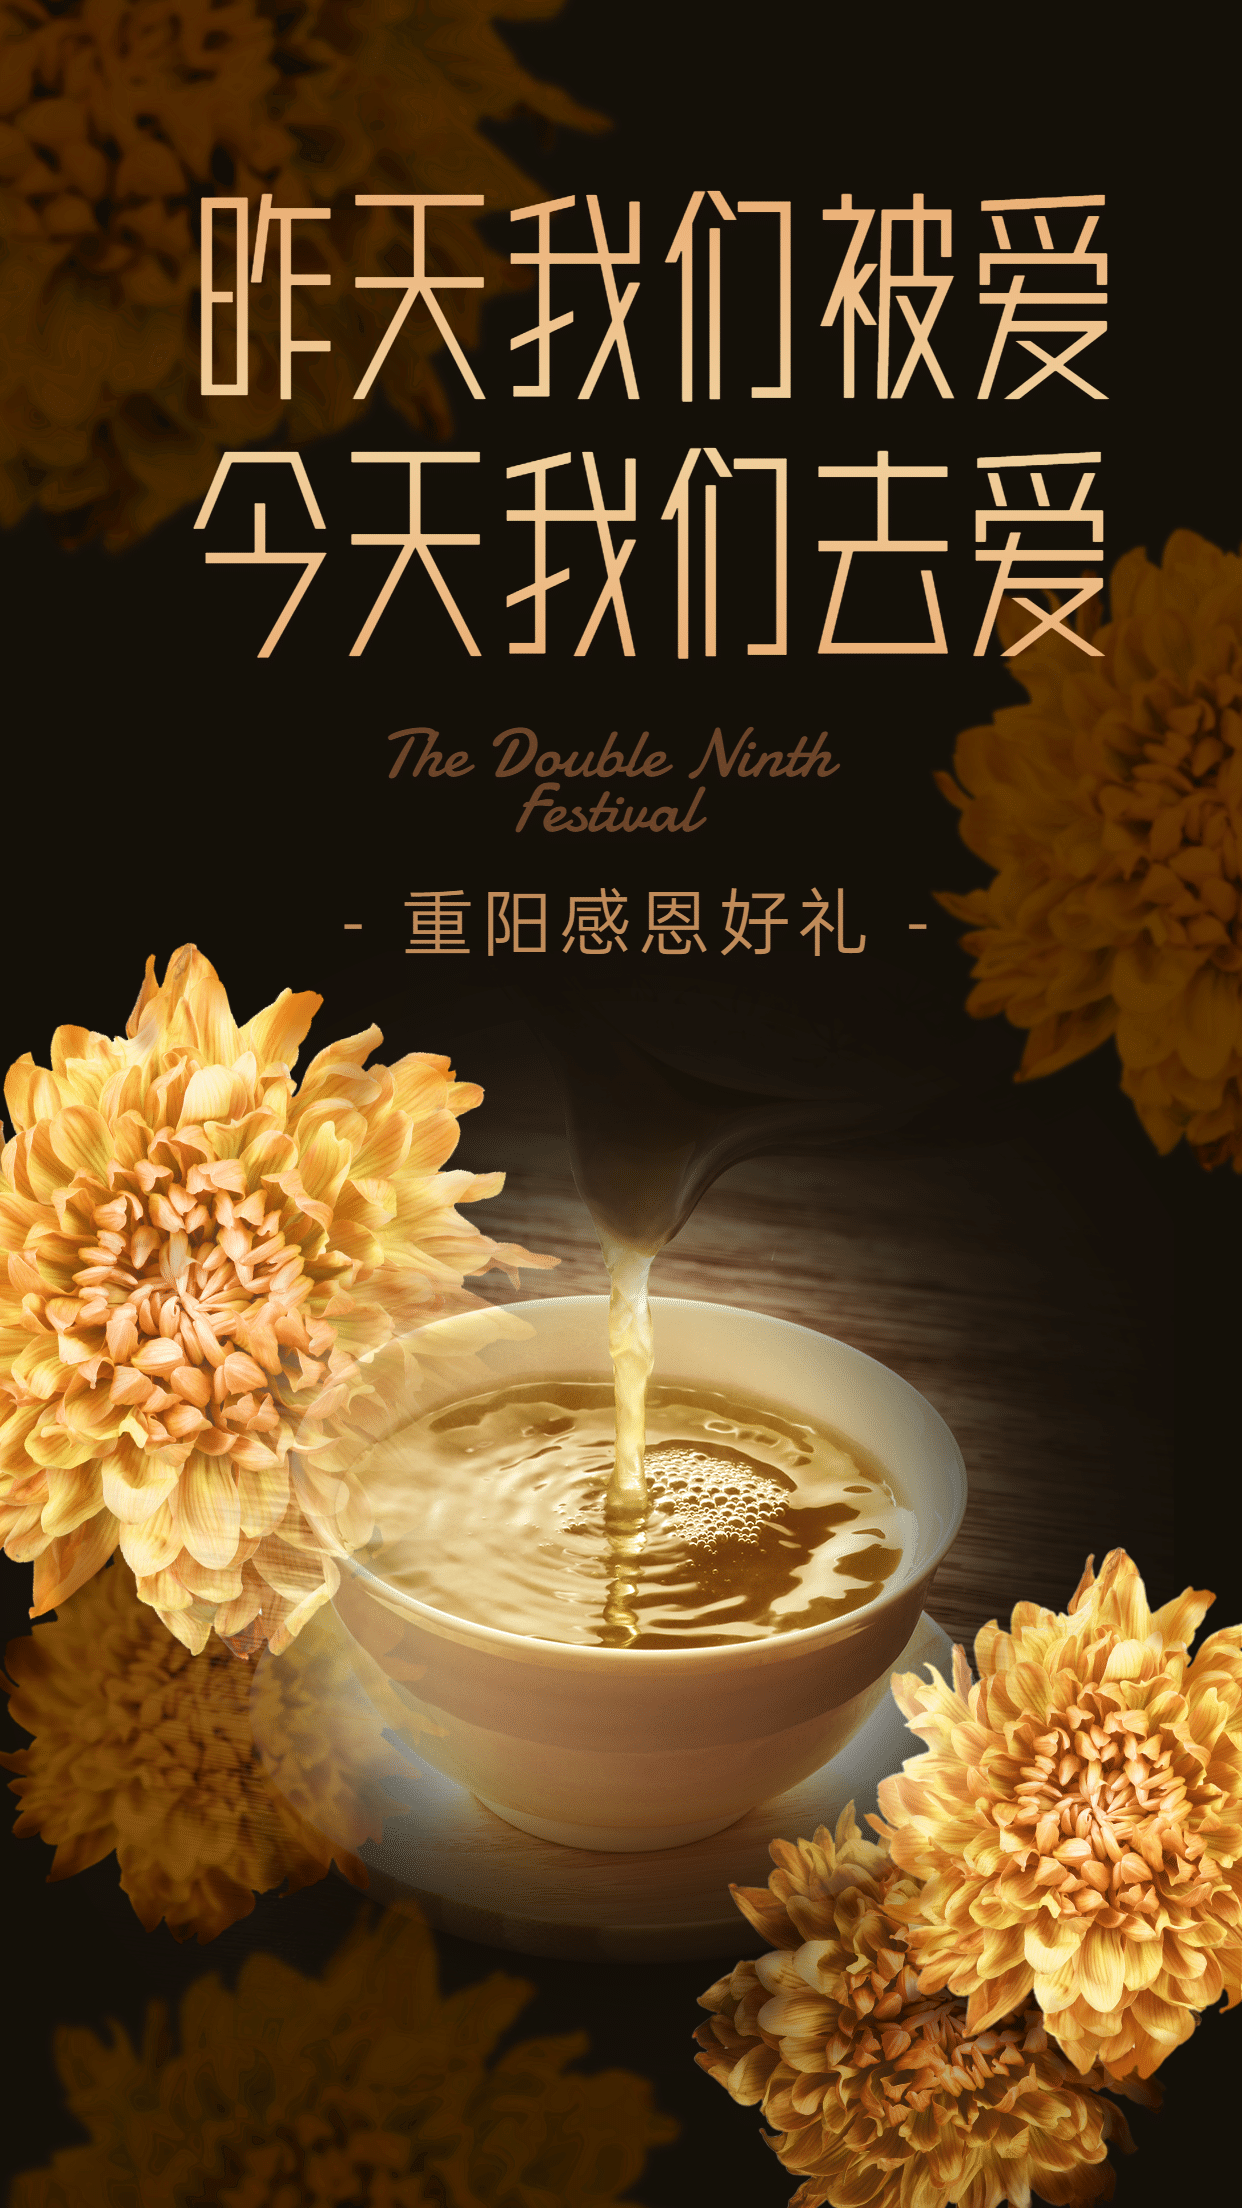 重阳节祝福晒产品展示融图菊花创意海报